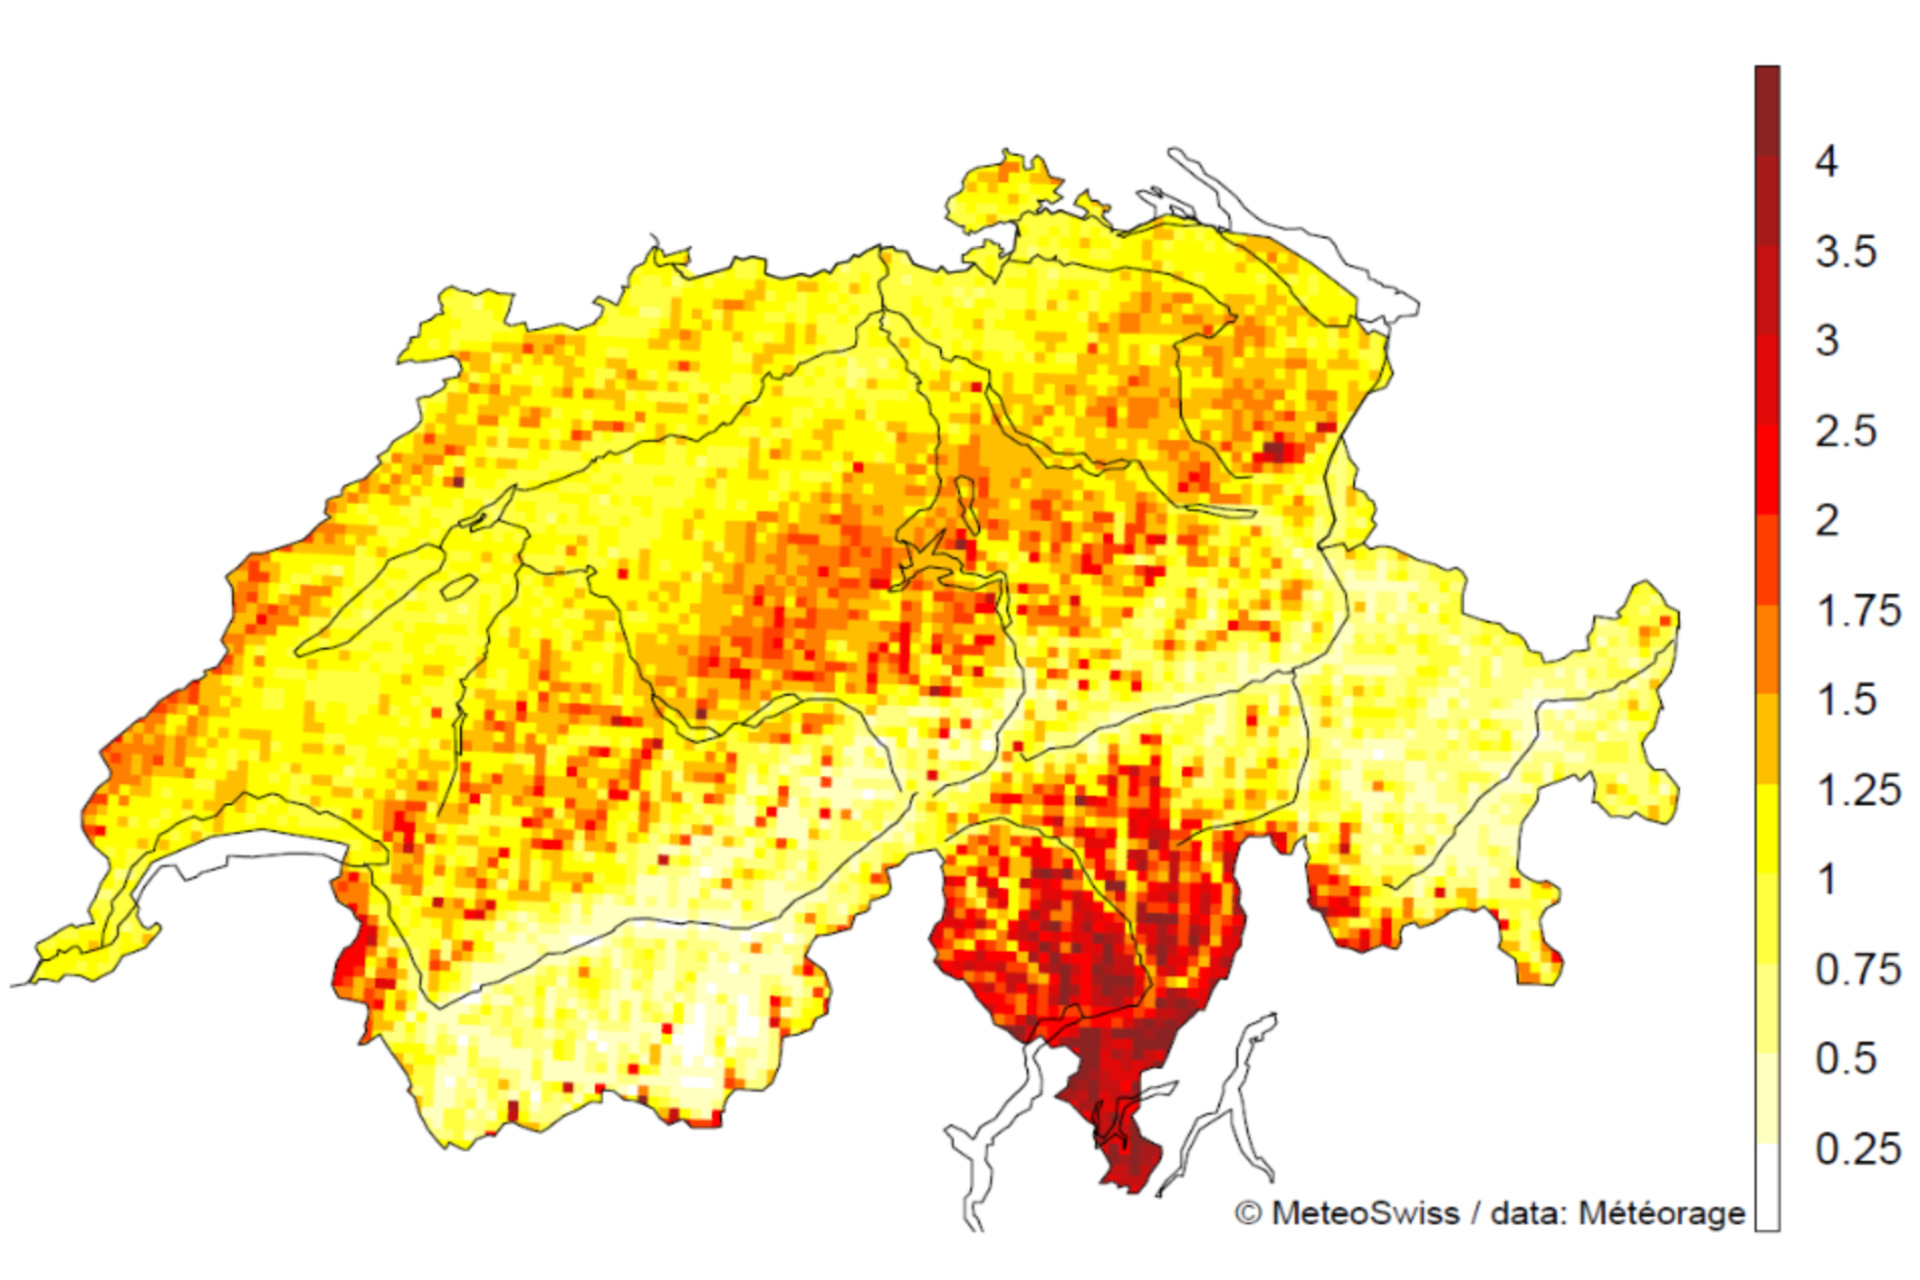 Foudre: le nombre de coups de foudre par kilomètre carré en Suisse sur la période 2000-2020, hors coups de foudre secondaires